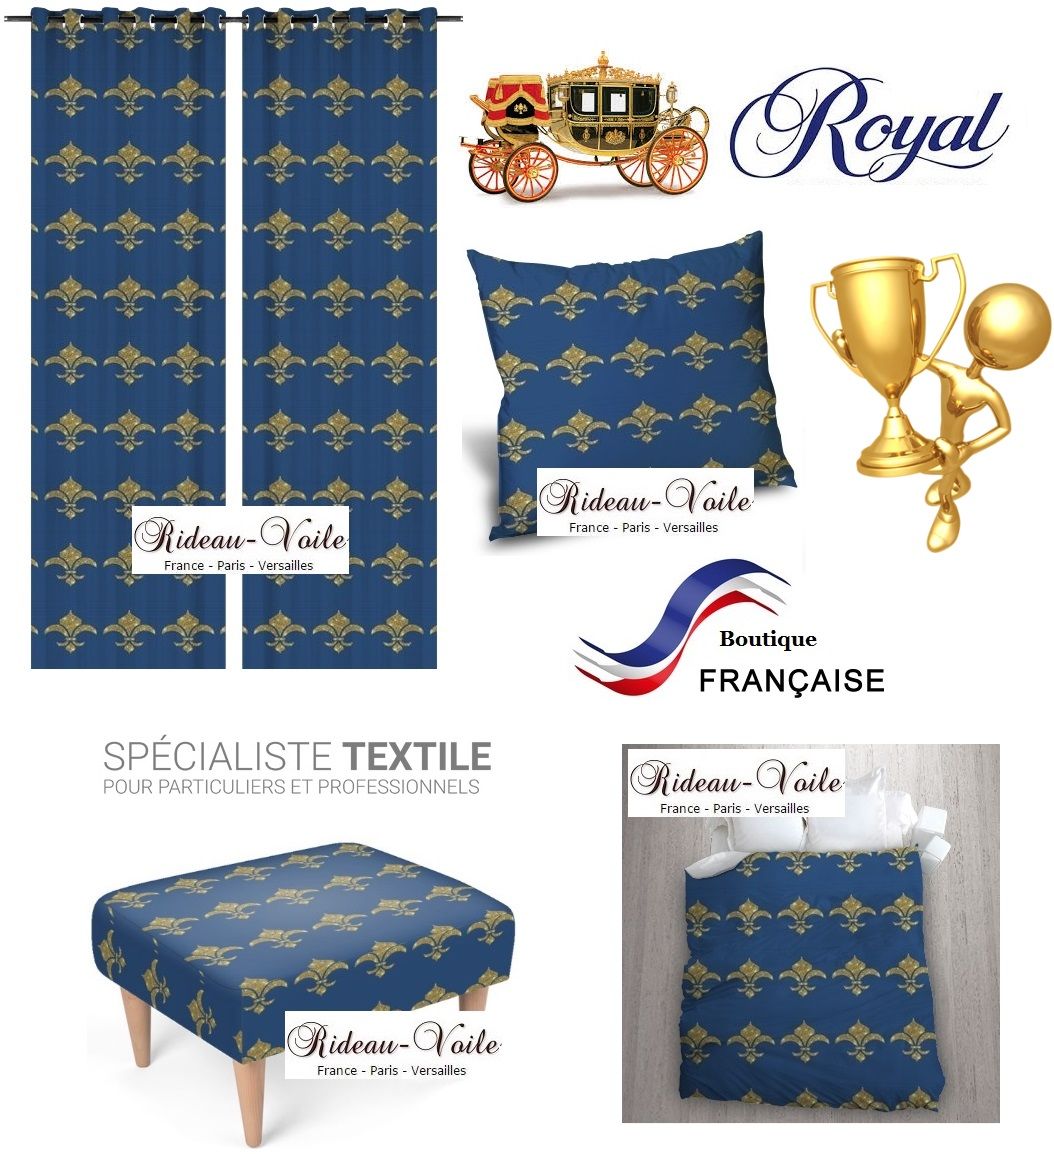 fauteuil siège rideau coussin tapisserie garnissage décoration décorateur style Empire fleur de lys or bleu déco luxe paris versailles